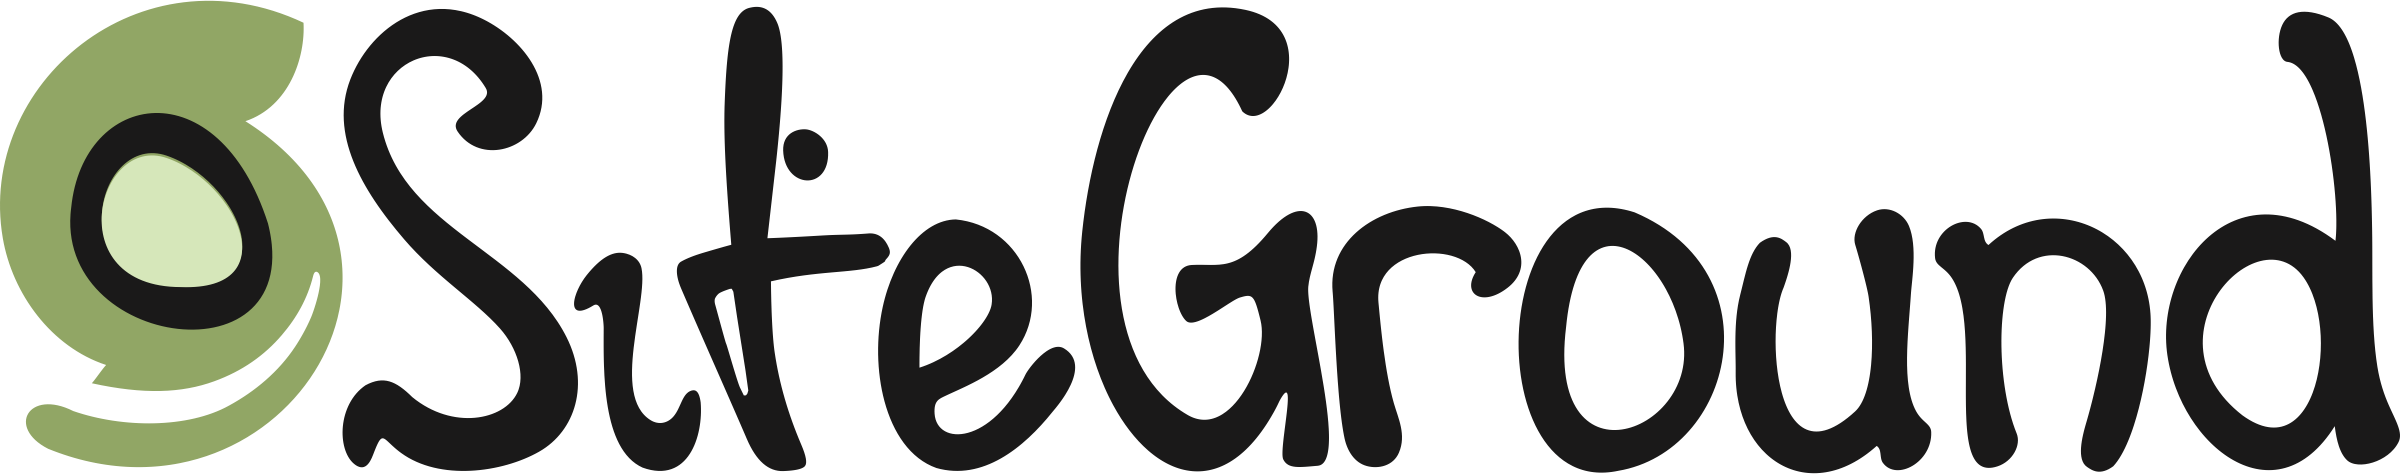 siteground hosting logo image